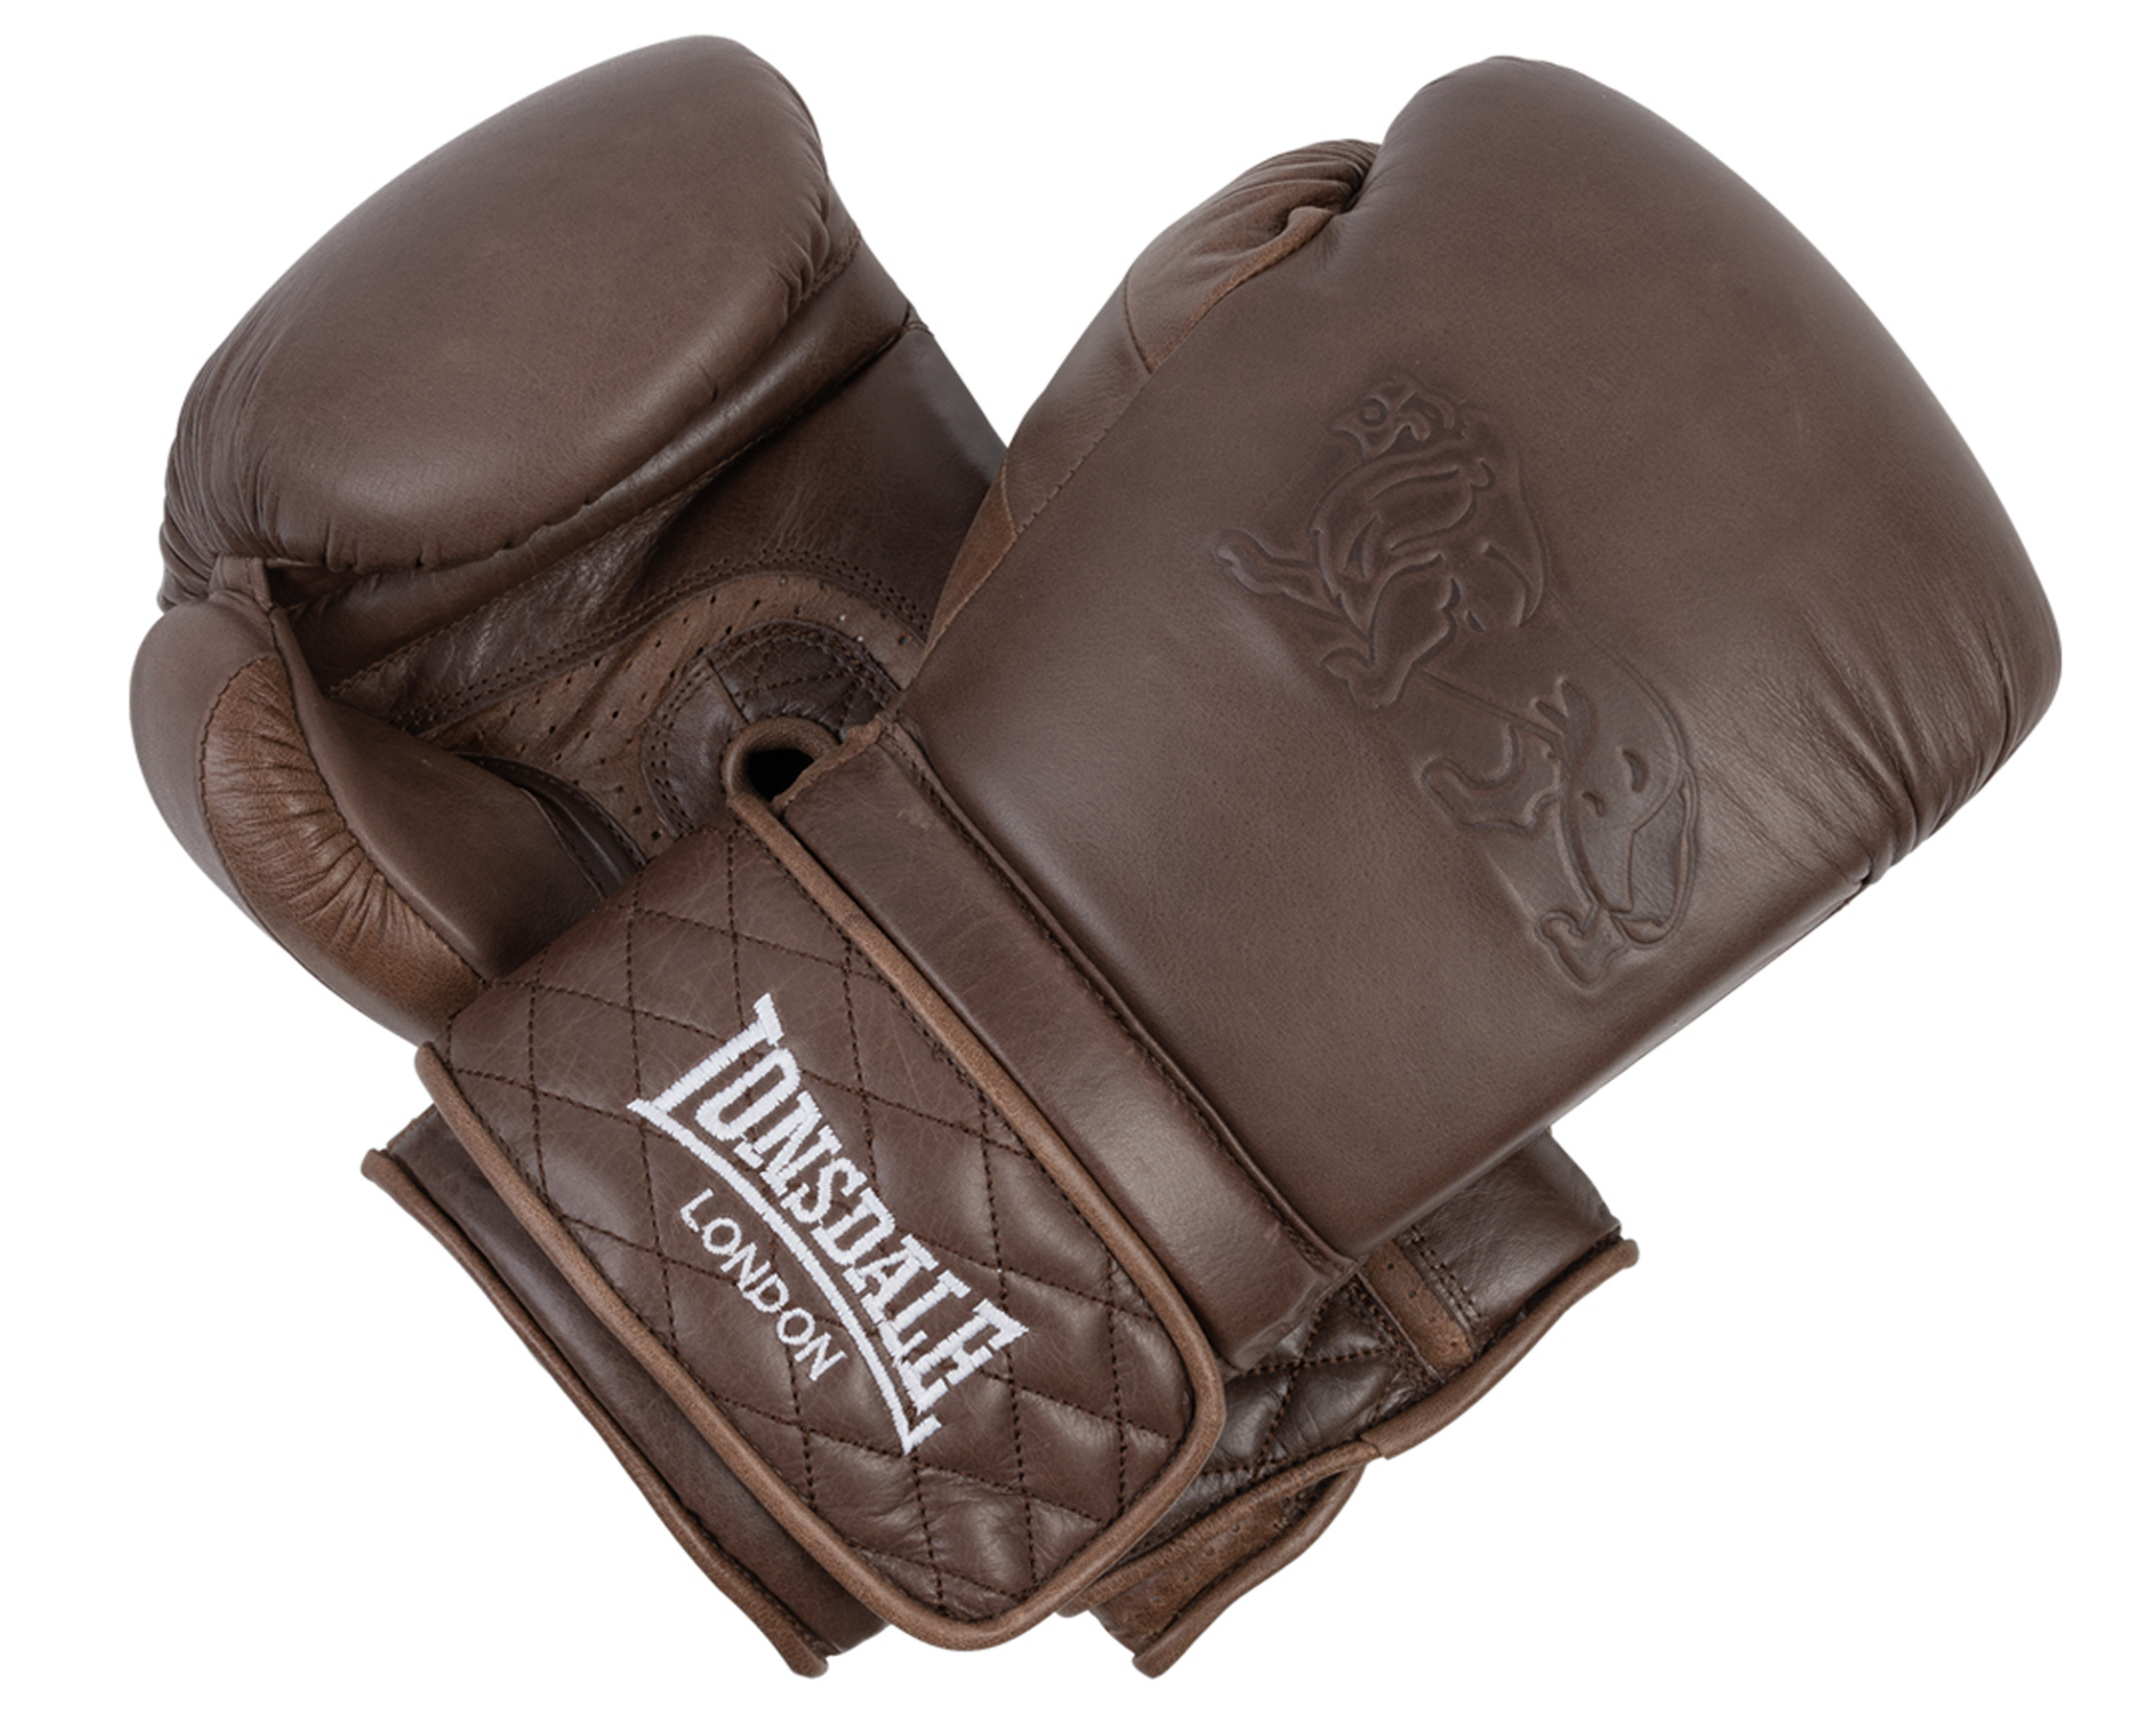 Lonsdale bokshandschoenen Vintage Spar Bokshandschoenen, trainingshandschoenen sparringshandschoenen - Lonsdale Boxing